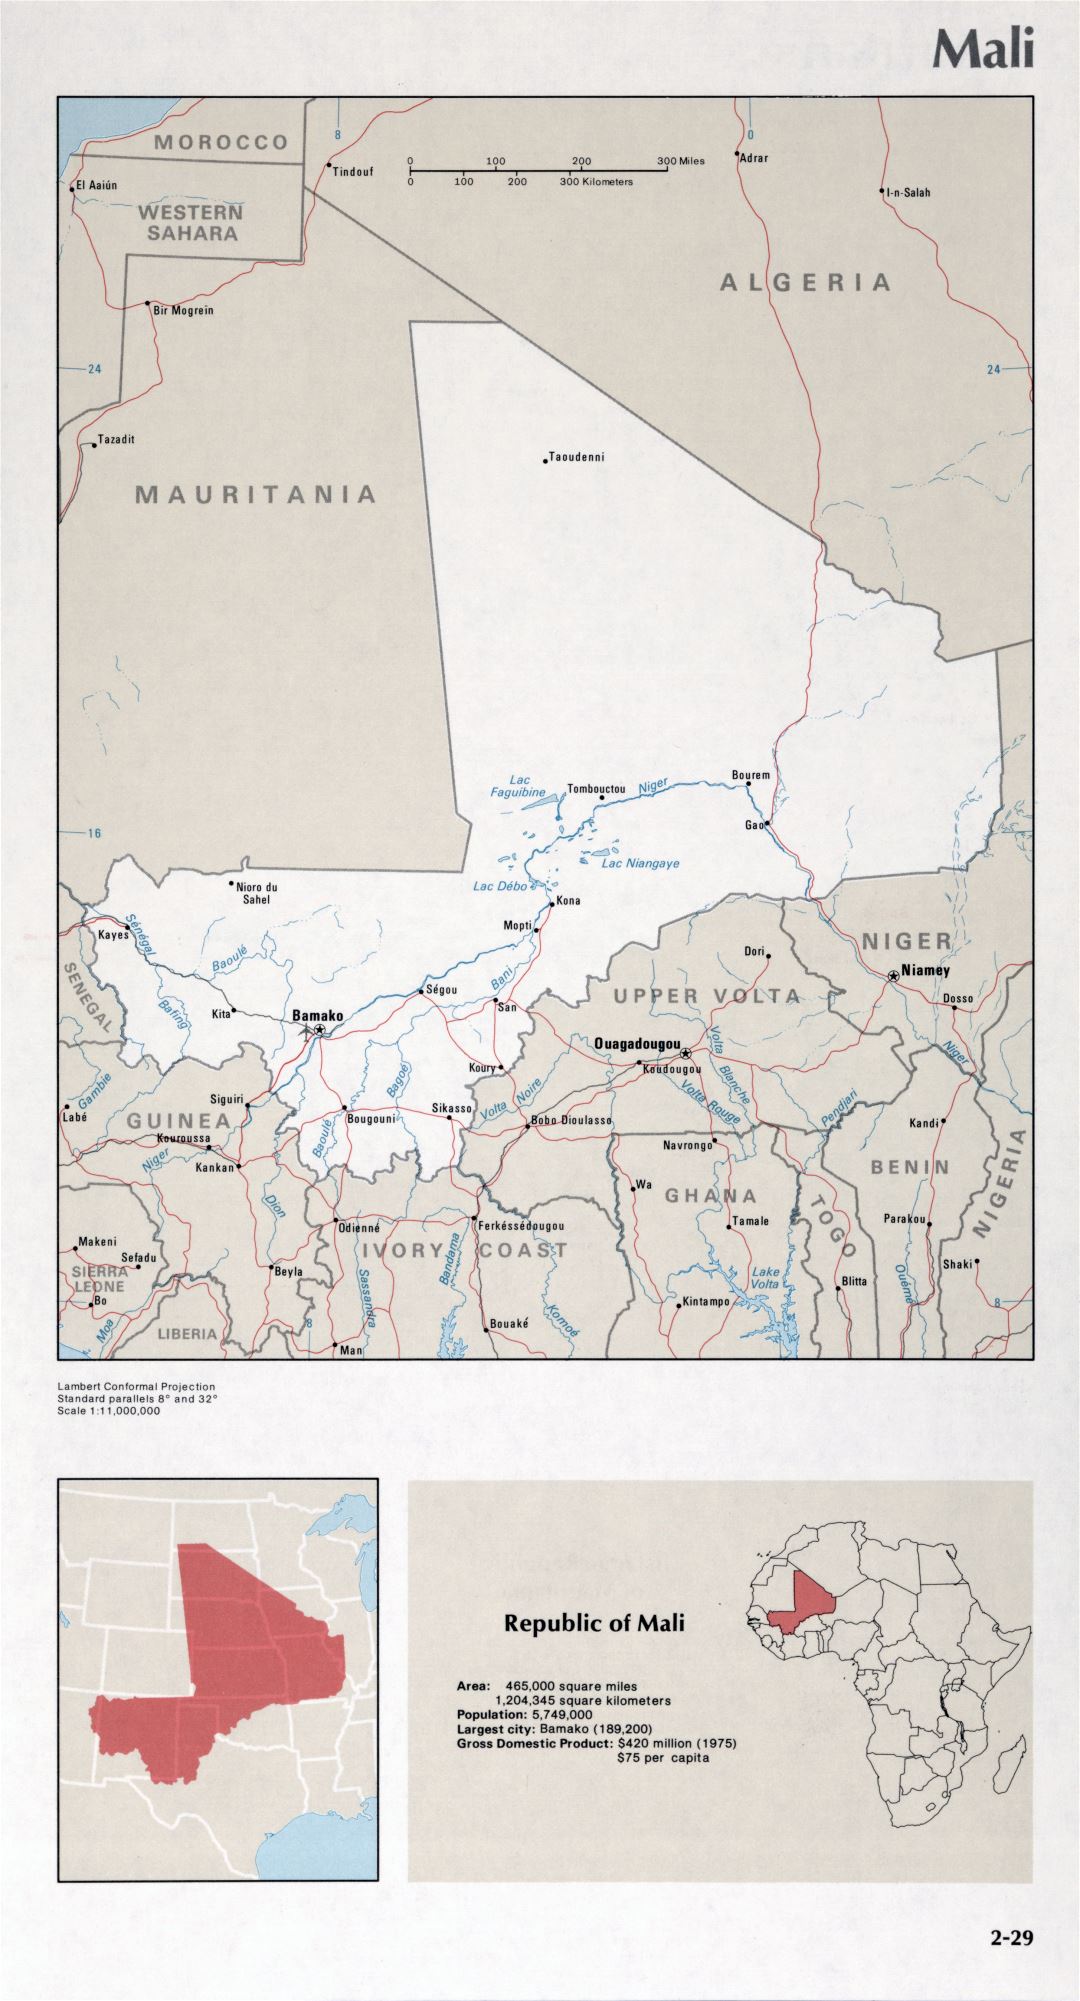 Map of Mali (2-29)